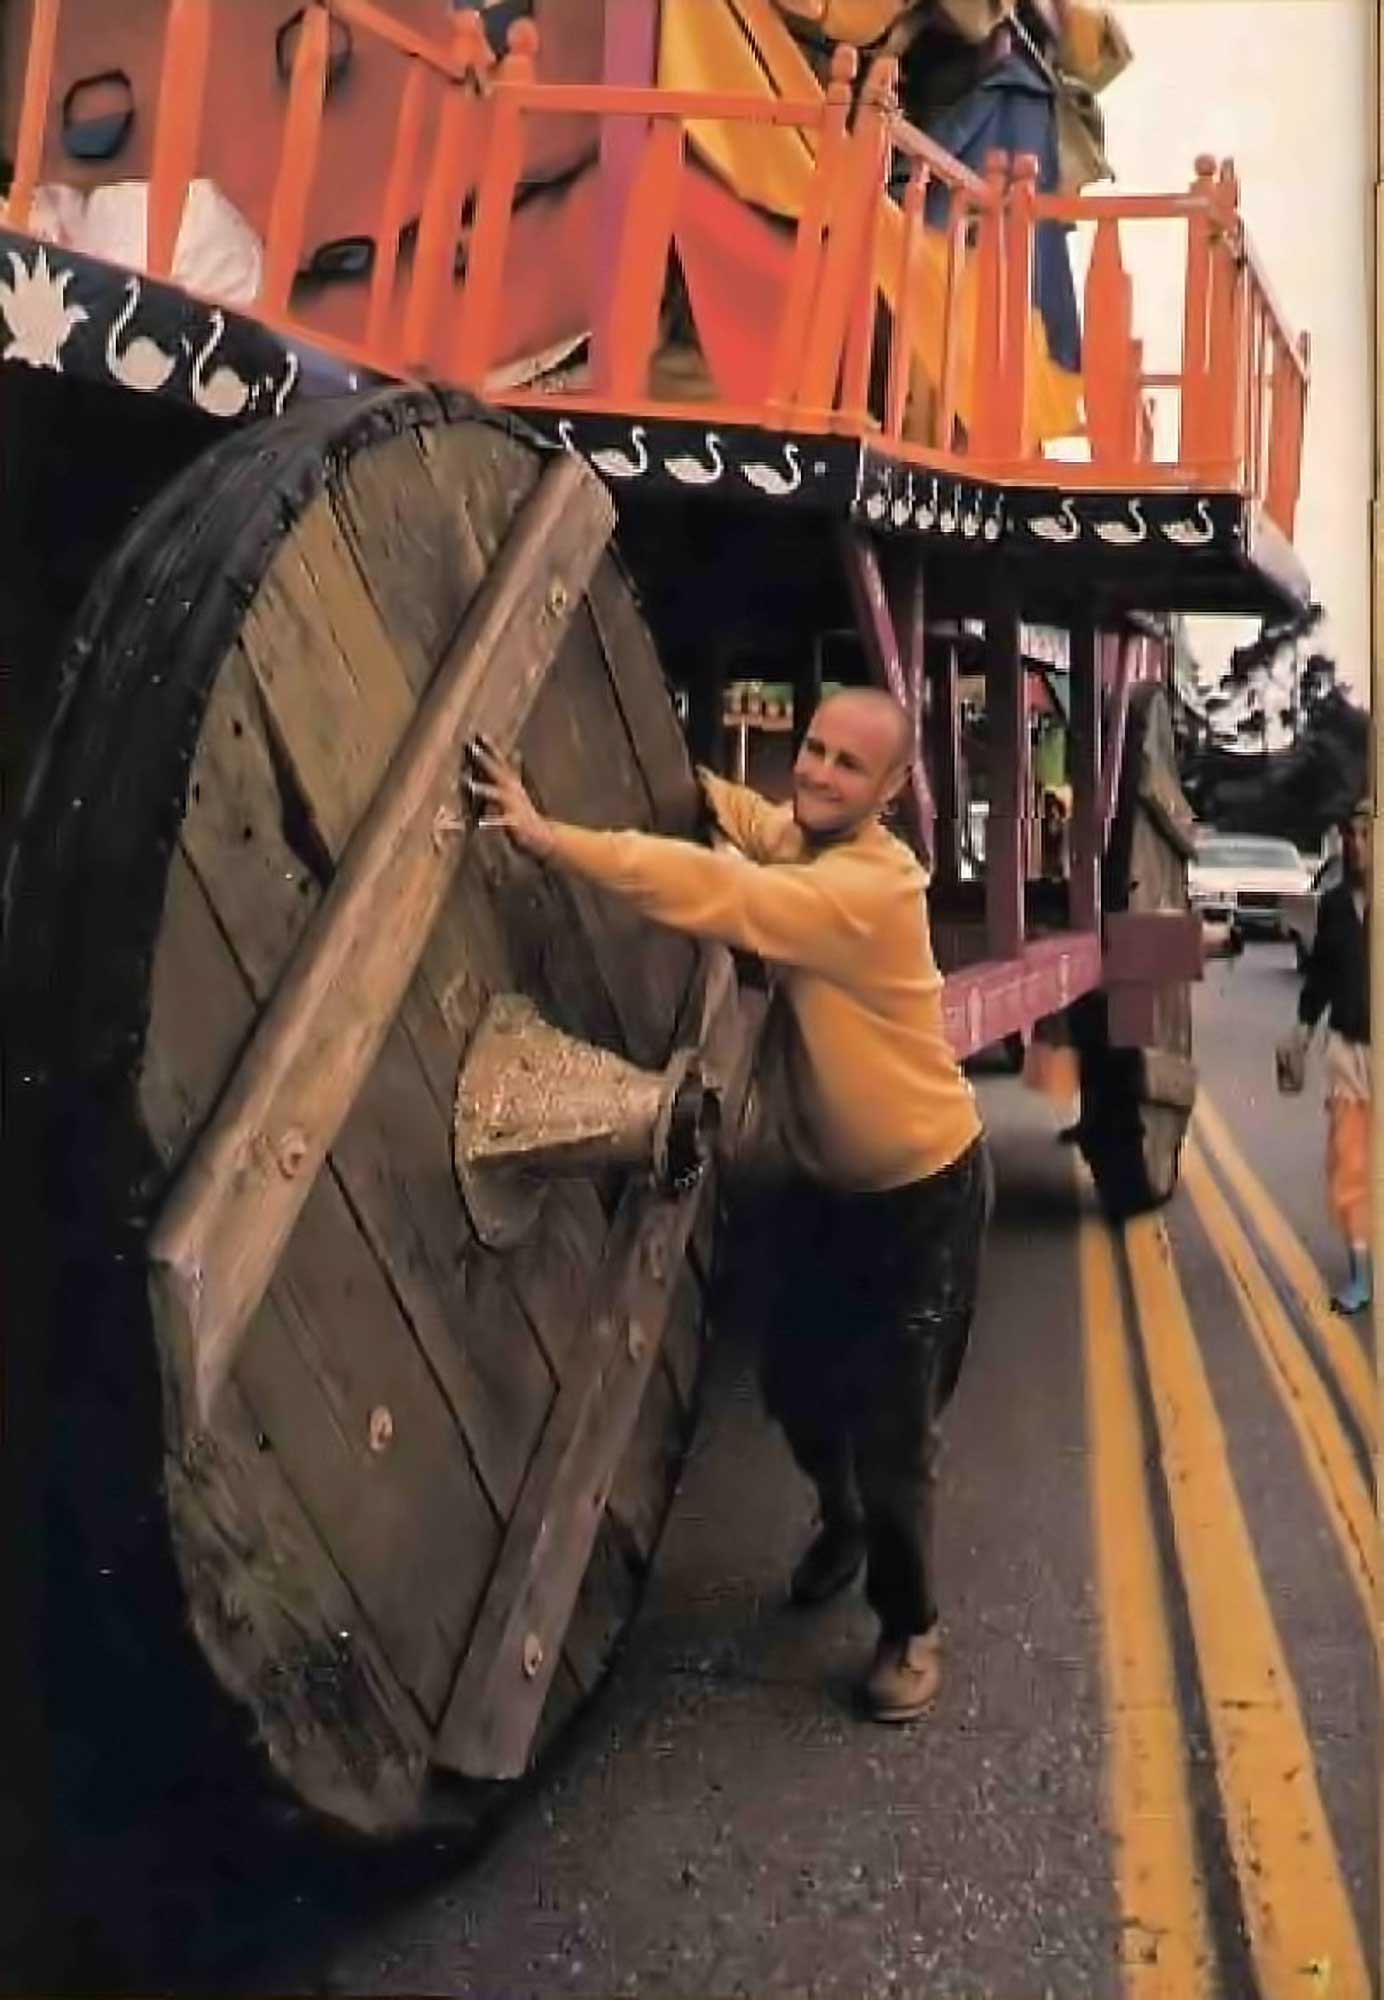 Jayānanda Dāsa moving the Ratha carts in preparation for the 1971 San Francisco Ratha-yatra